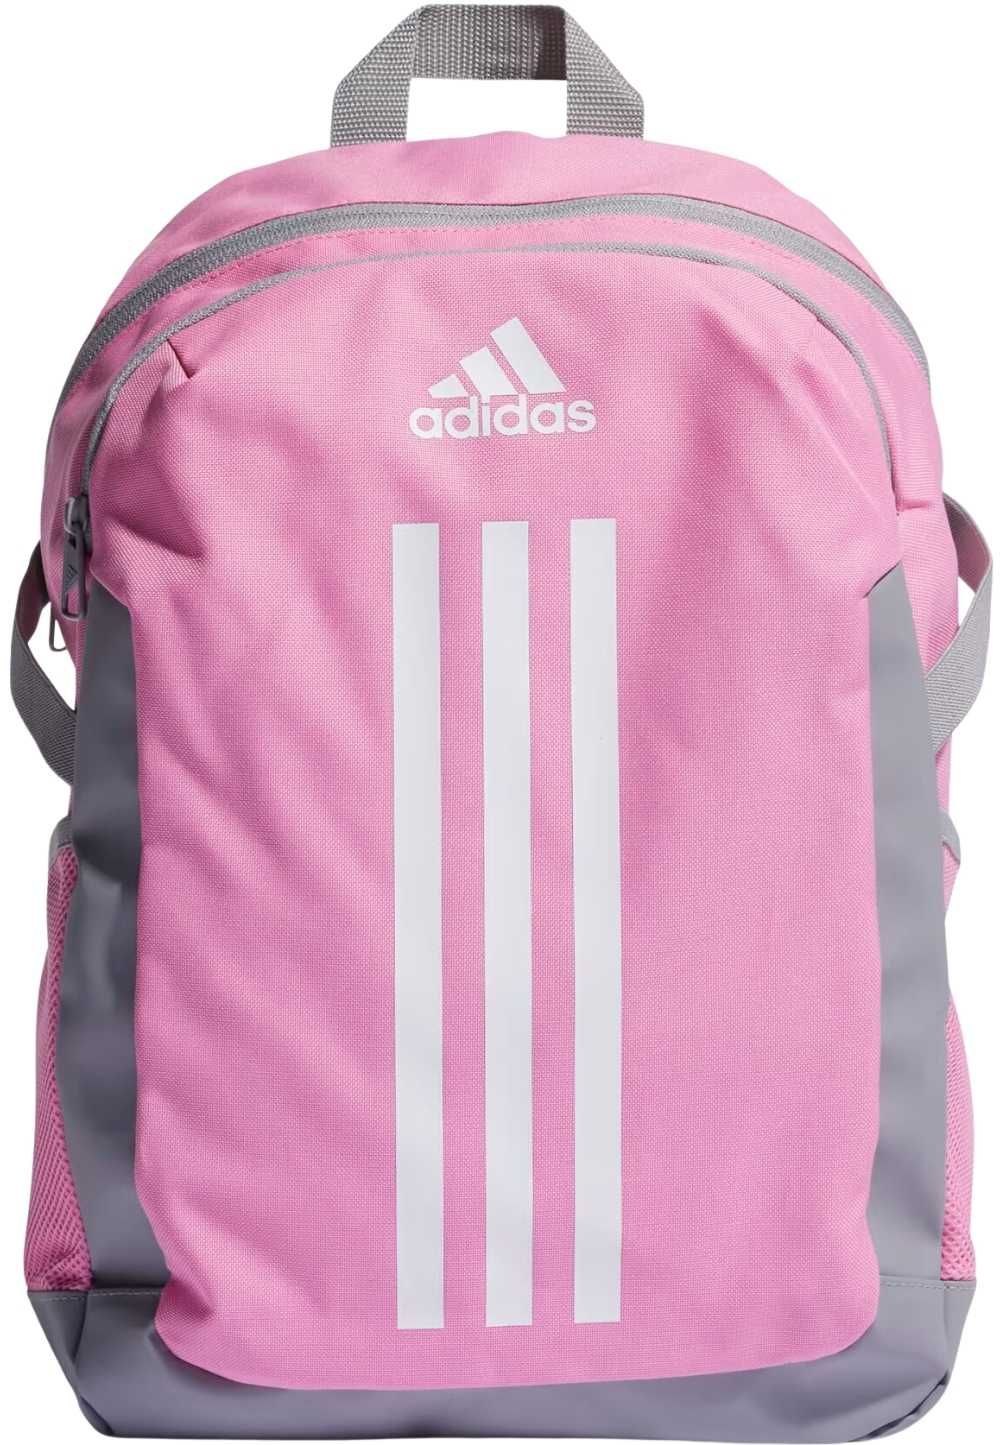 Plecak szkolny sportowy Adidas Power Backpack różowy